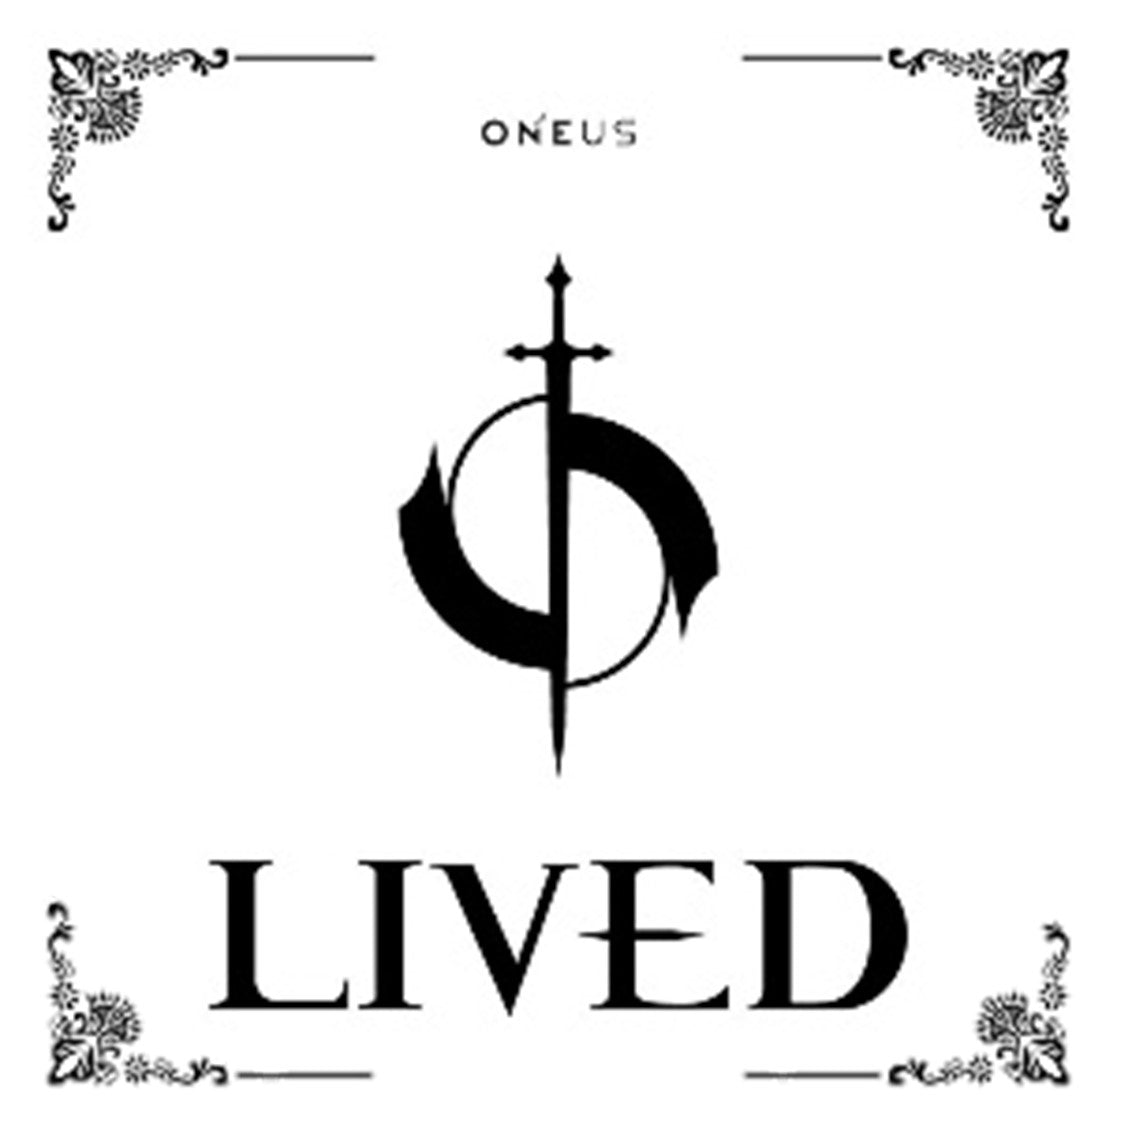 ONEUS - 4th Mini album - Lived